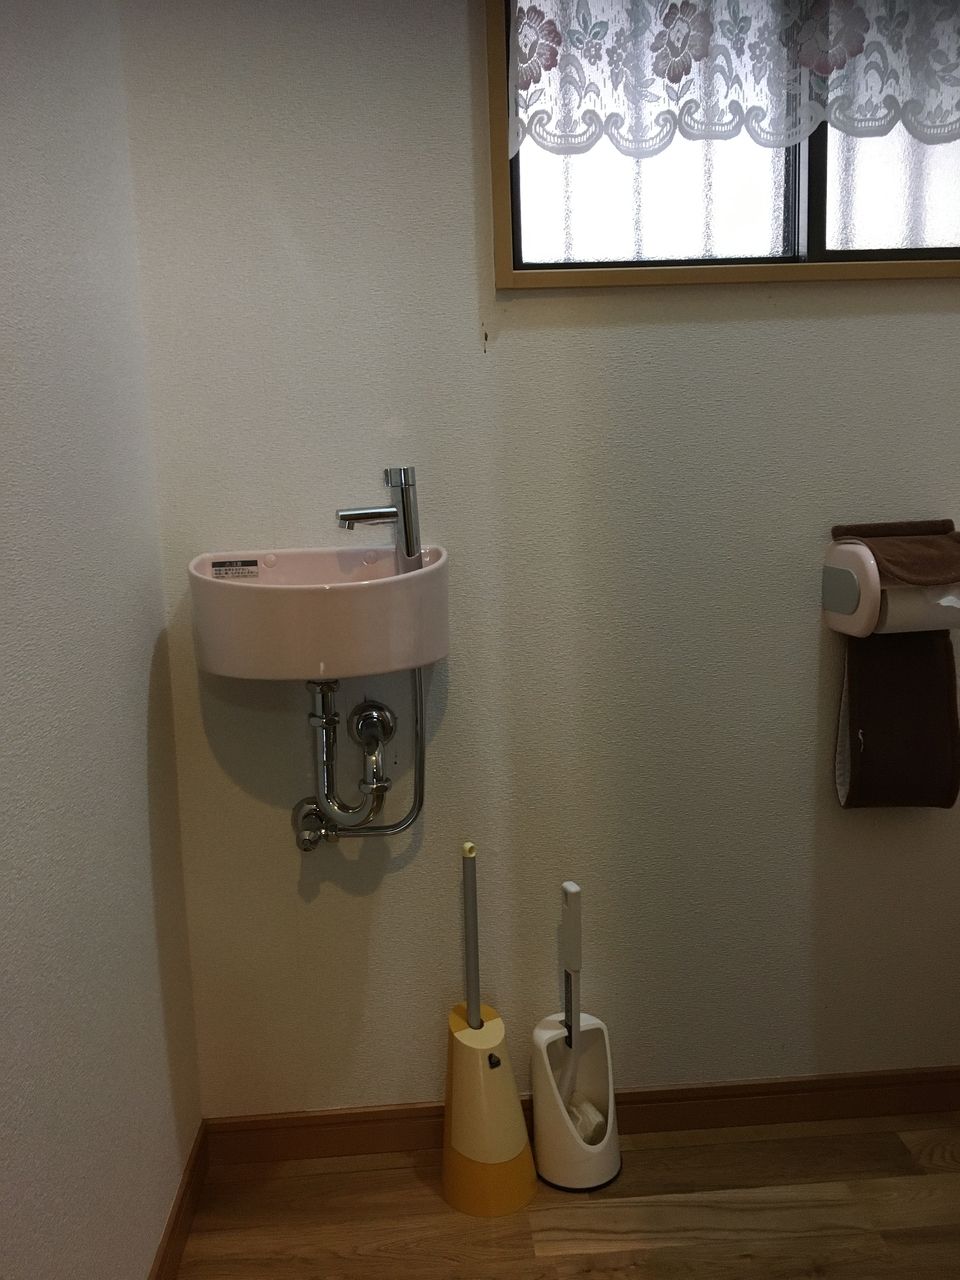 熊本市東区桜木の戸建住宅です。トイレの手洗器